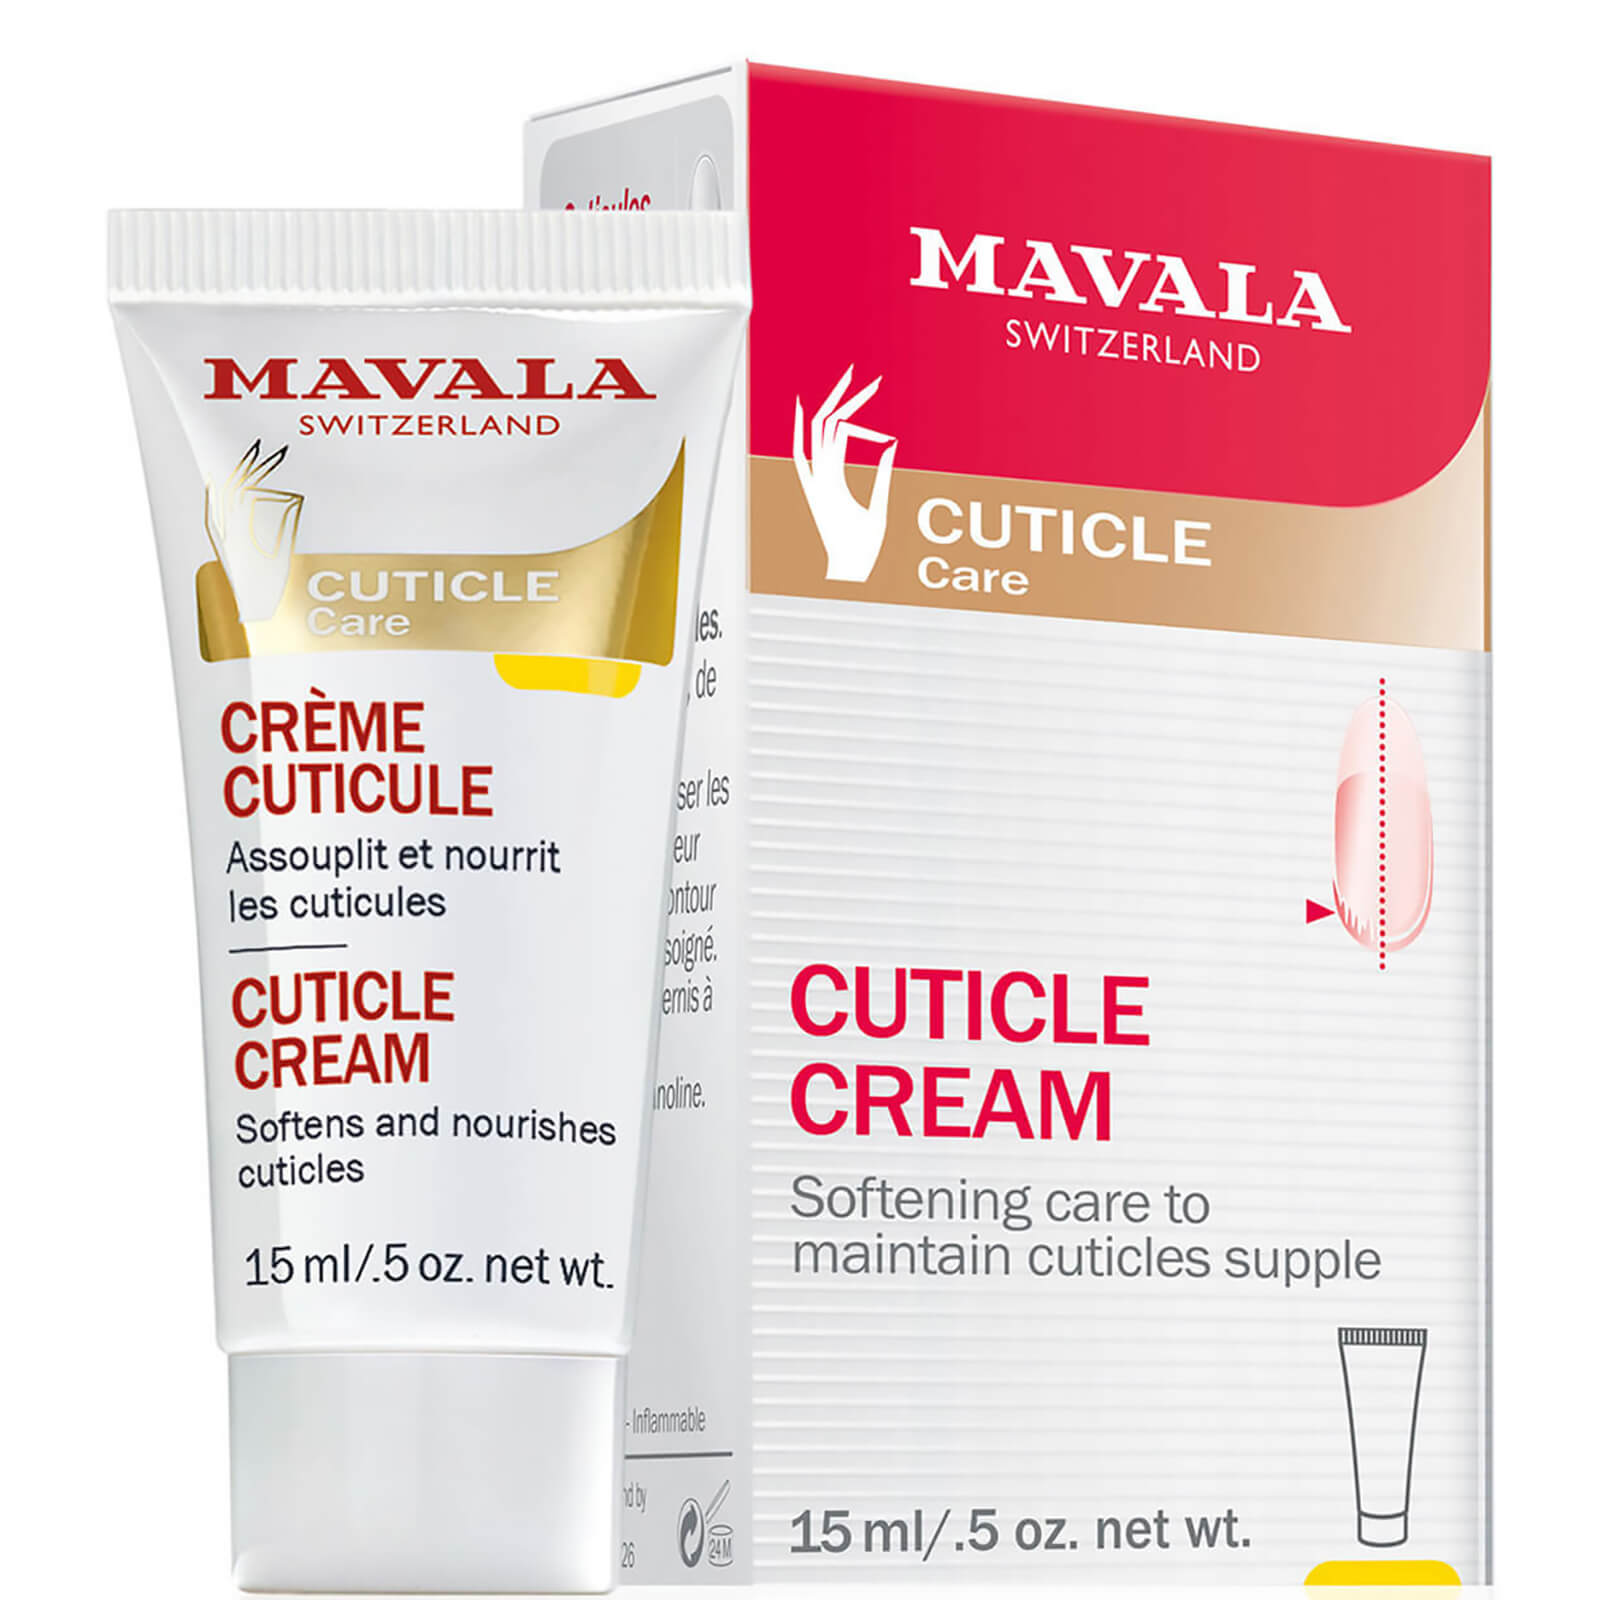 Mavala Cuticle Cream (15ml) lookfantastic.com imagine